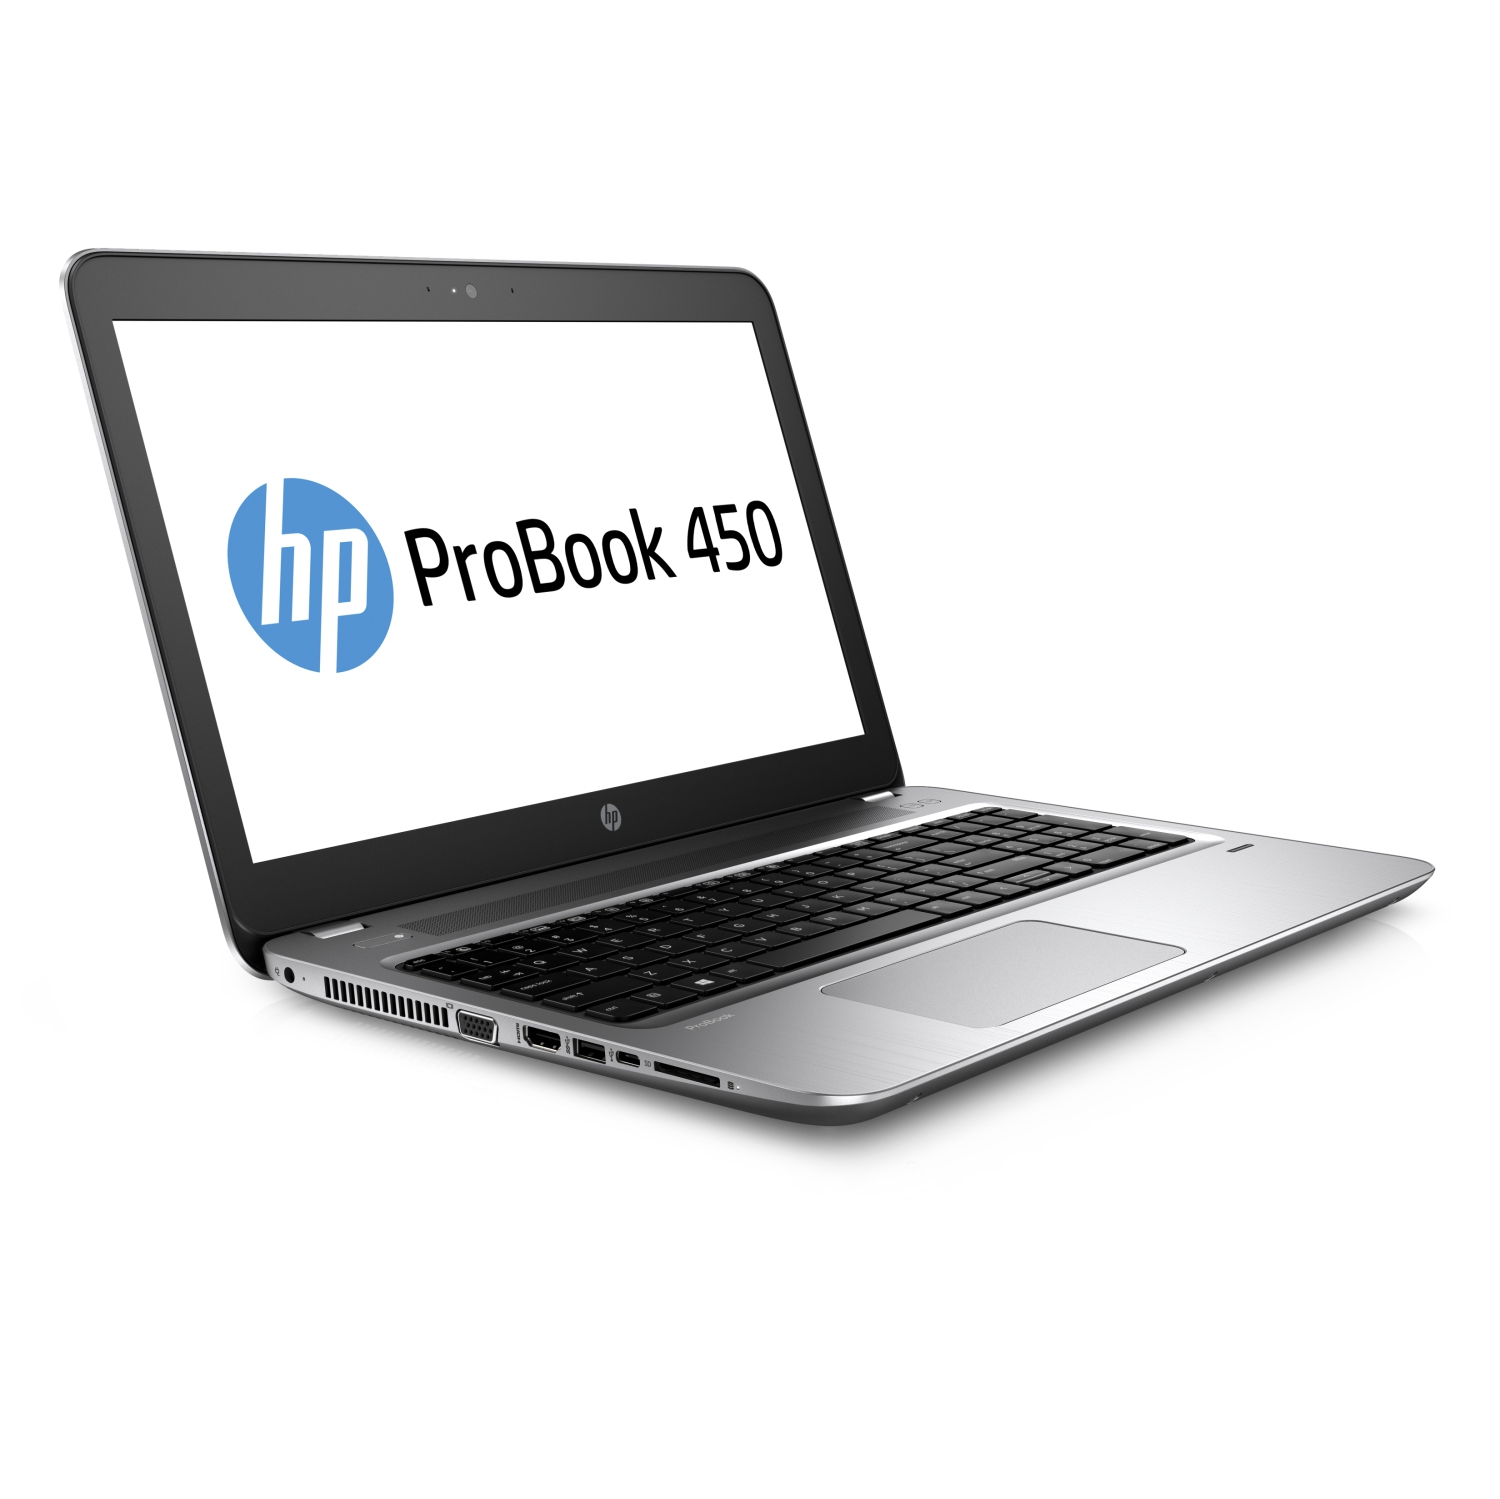 Refurbished (Good) - HP ProBook 450 G4 15.6" Laptop - Intel Core i5 6th Gen (i5-7200U) | 8GB RAM | 240GB SSD | Windows 10 Pro